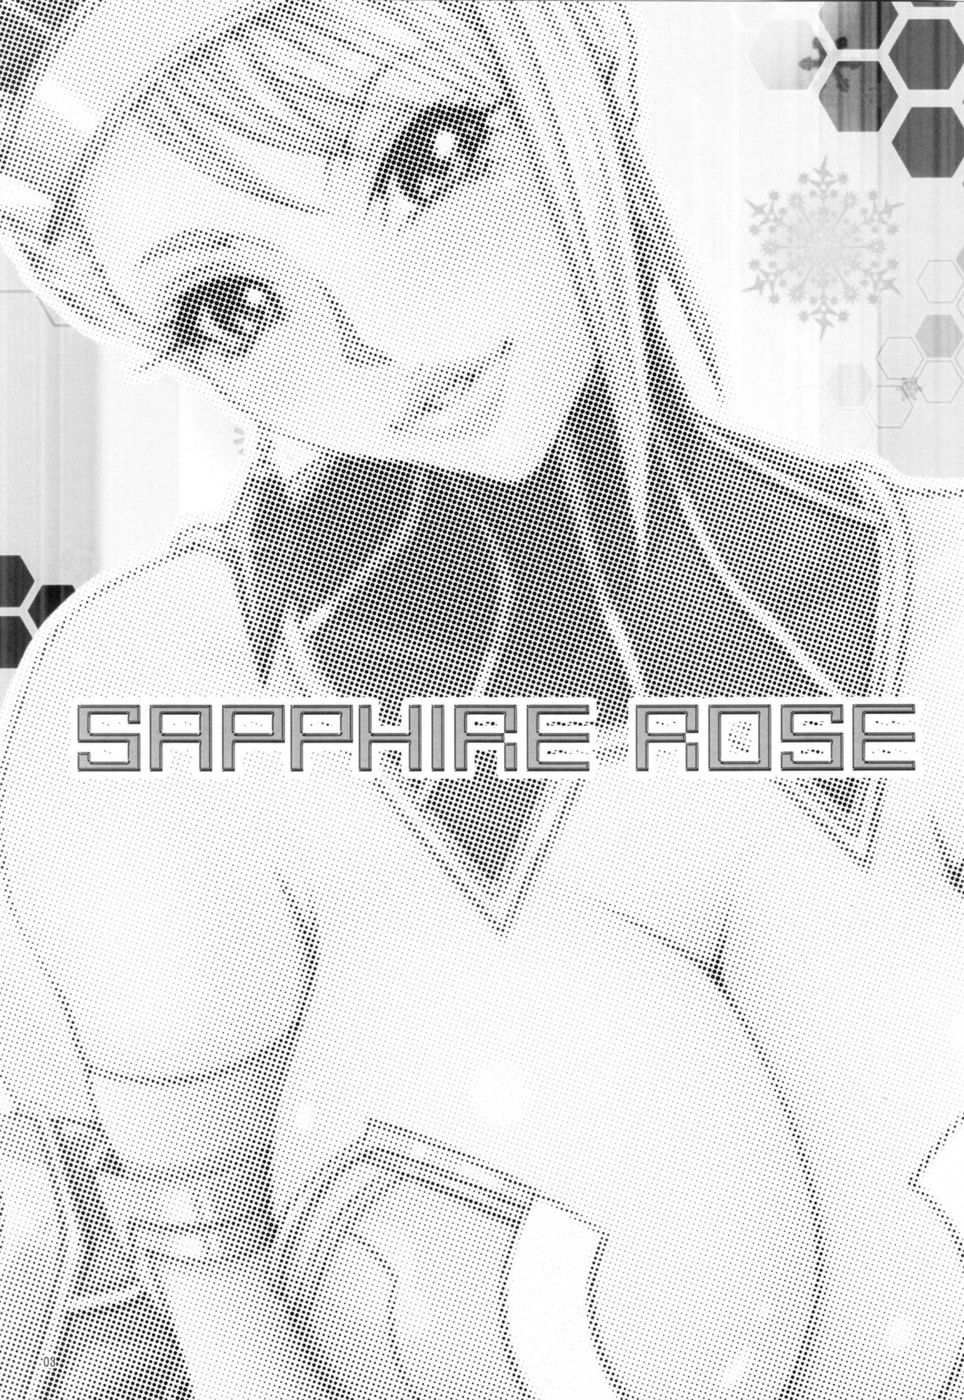 Hentai Manga Comic-SAPPHIRE ROSE-Read-2